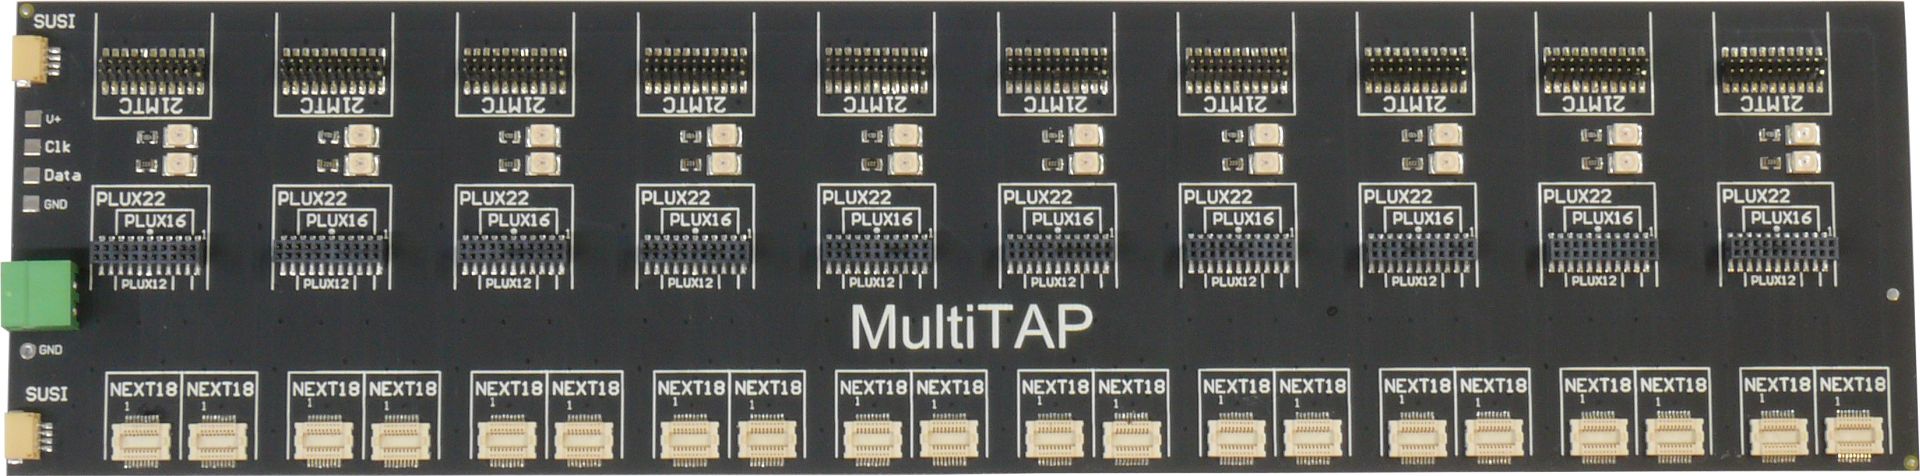 Zimo MULTITAP - Schnell-Ladeboard für viele Decoder